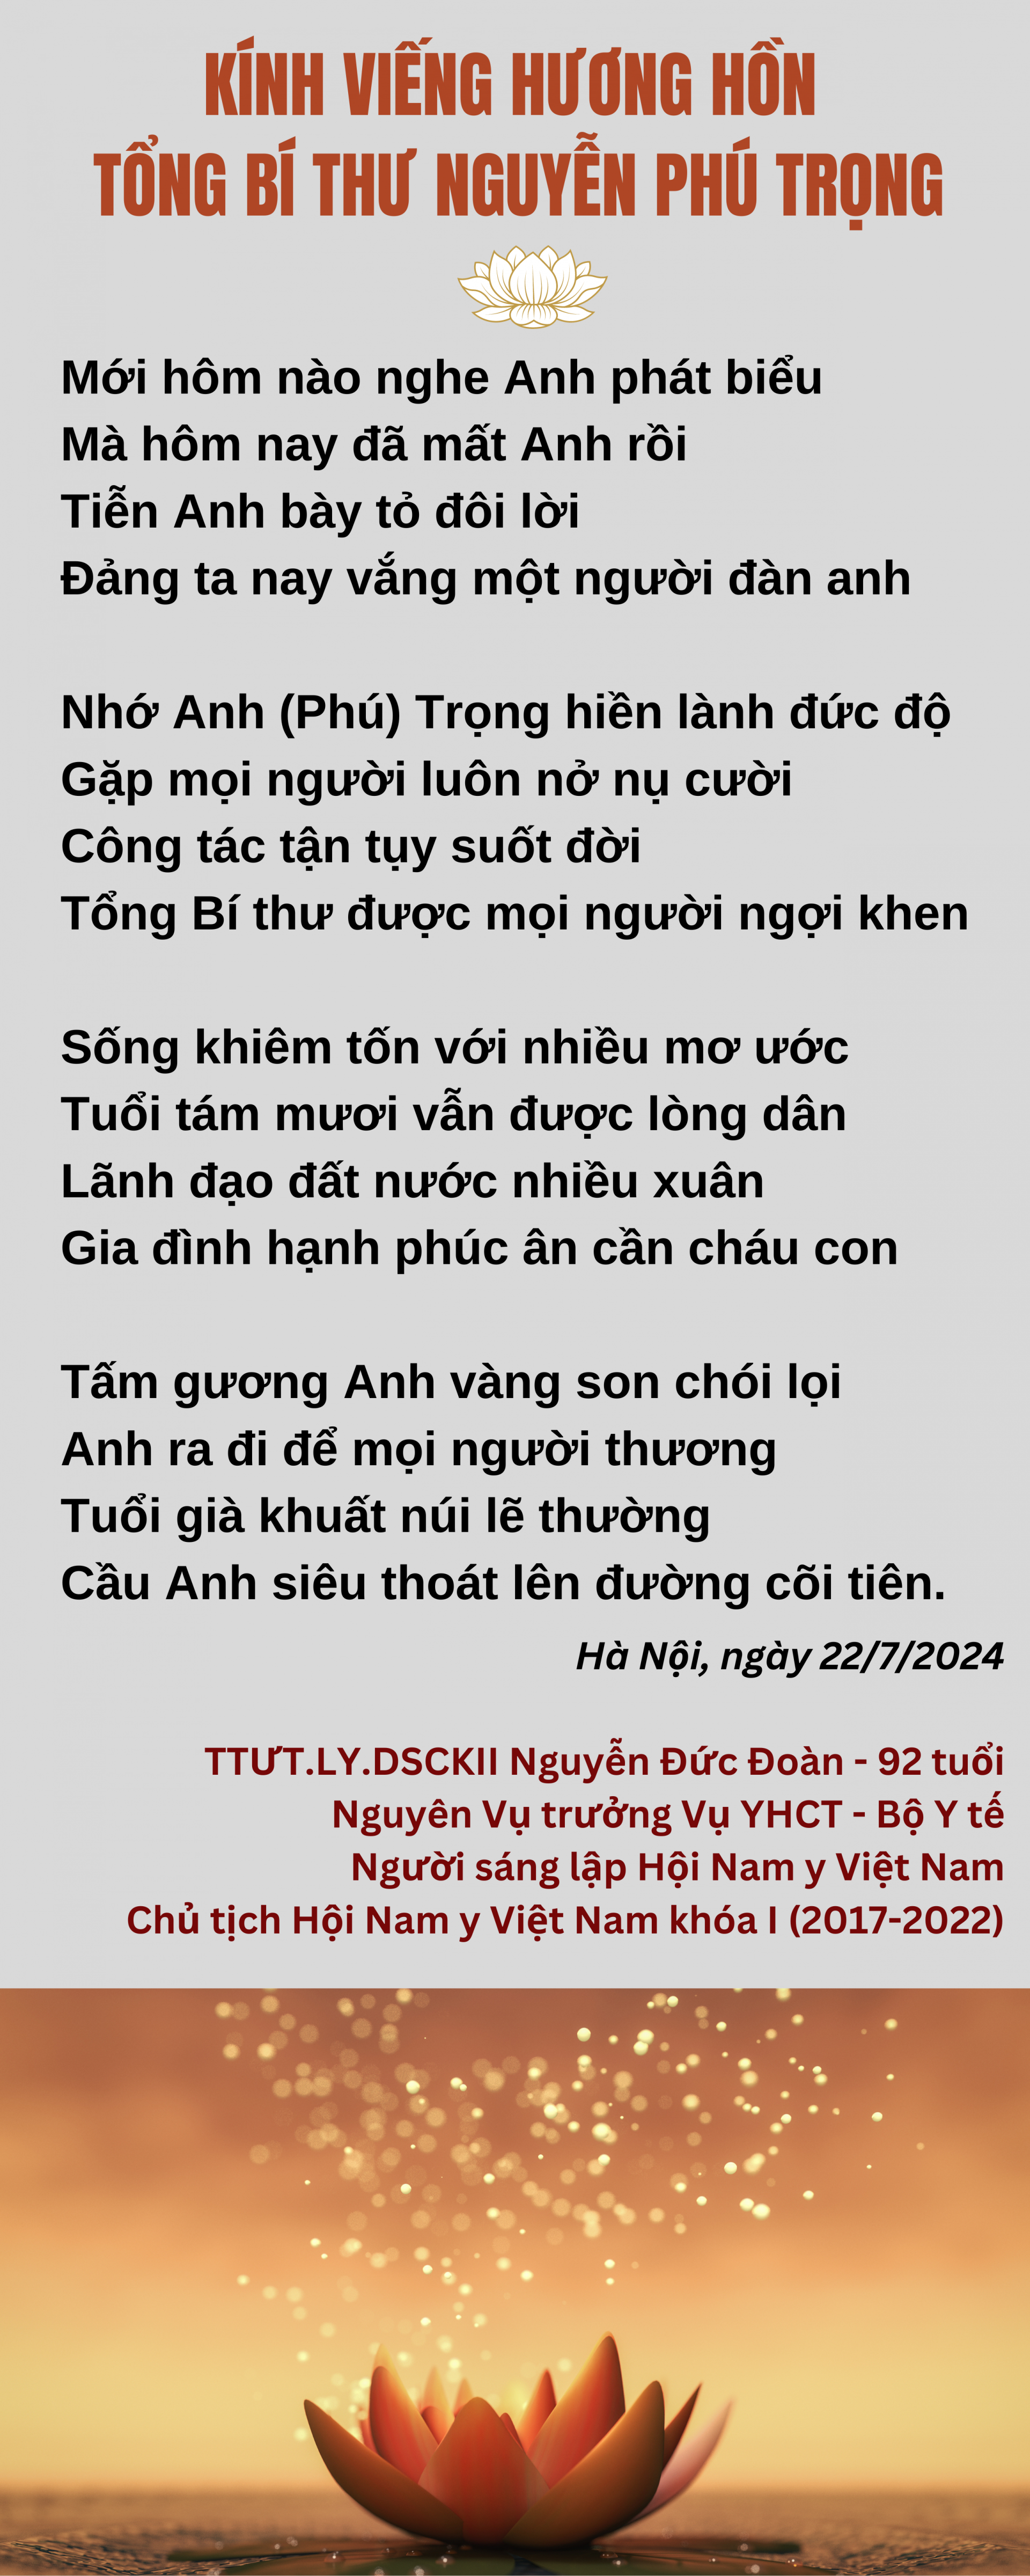 Kính viếng hương hồn Tổng Bí thư Nguyễn Phú Trọng